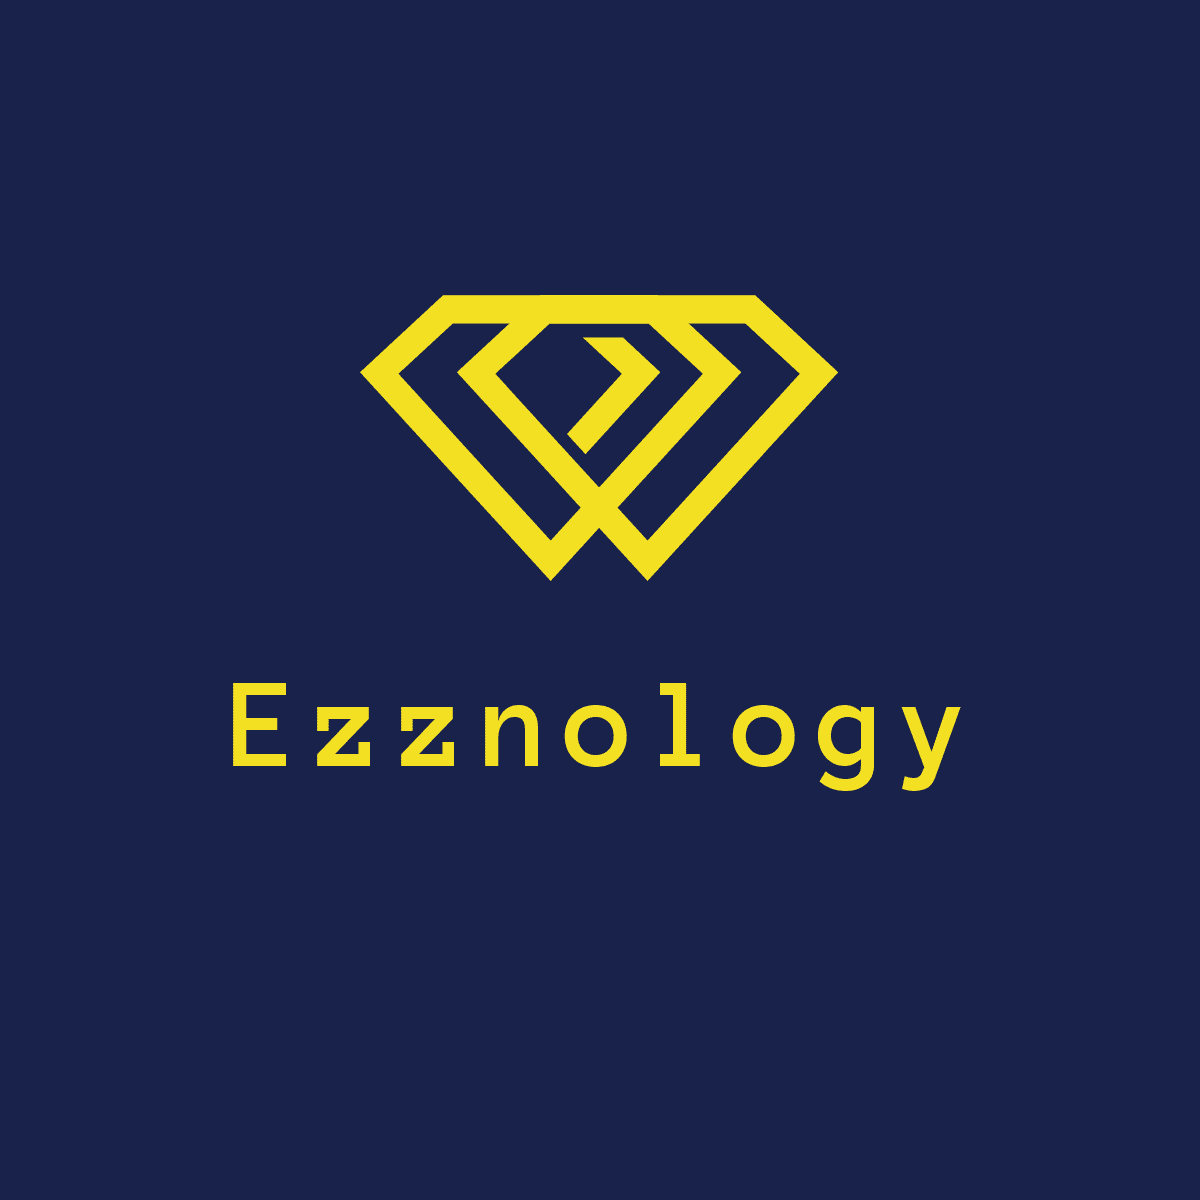 موقع Ezznology.com طريقك لعالم التقنية والإبتكار